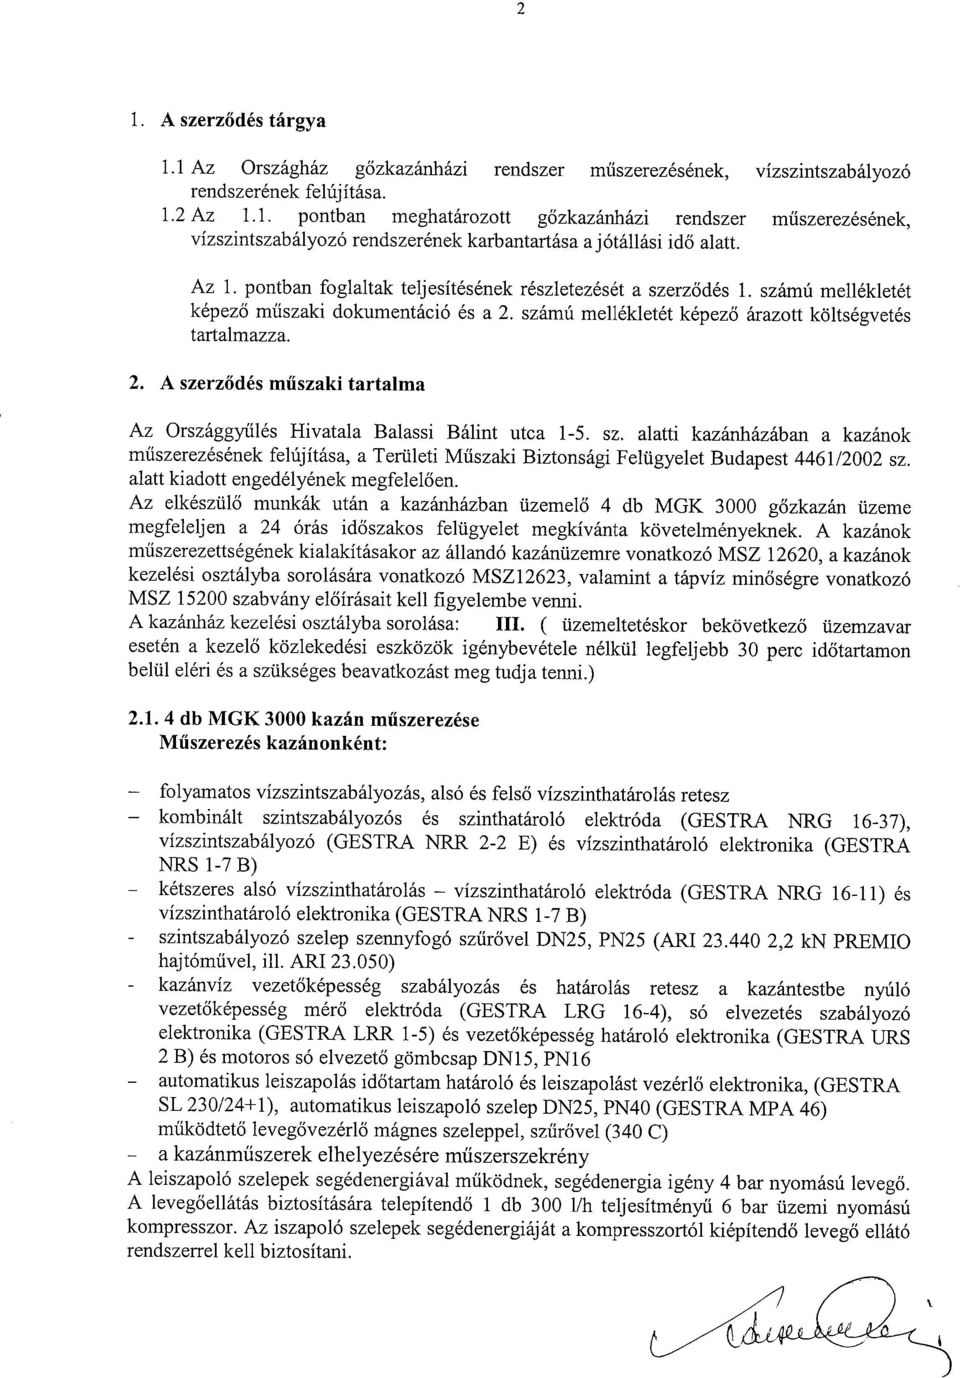 sz. alatti kazánházában a kazánok műszerezésének felújítása, a Területi Műszaki Biztonsági Felügyelet Budapest 4461/2002 sz. alatt kiadott engedélyének megfelelően.